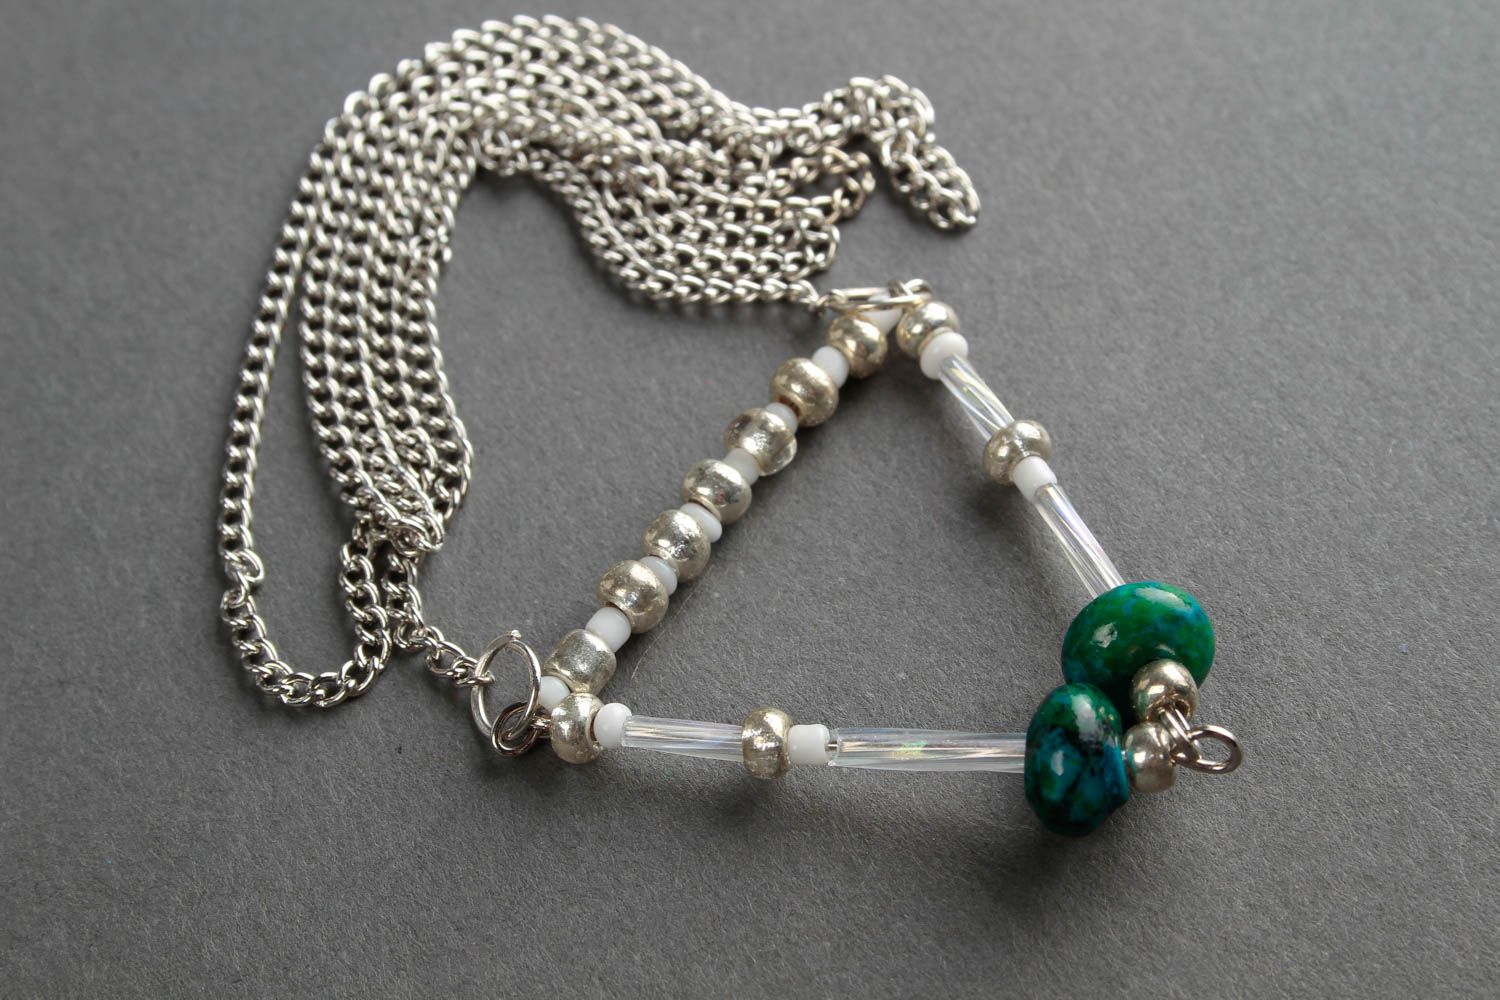 Chain pendant handmade long pendant beaded pendant fashion bijouterie for girls photo 4